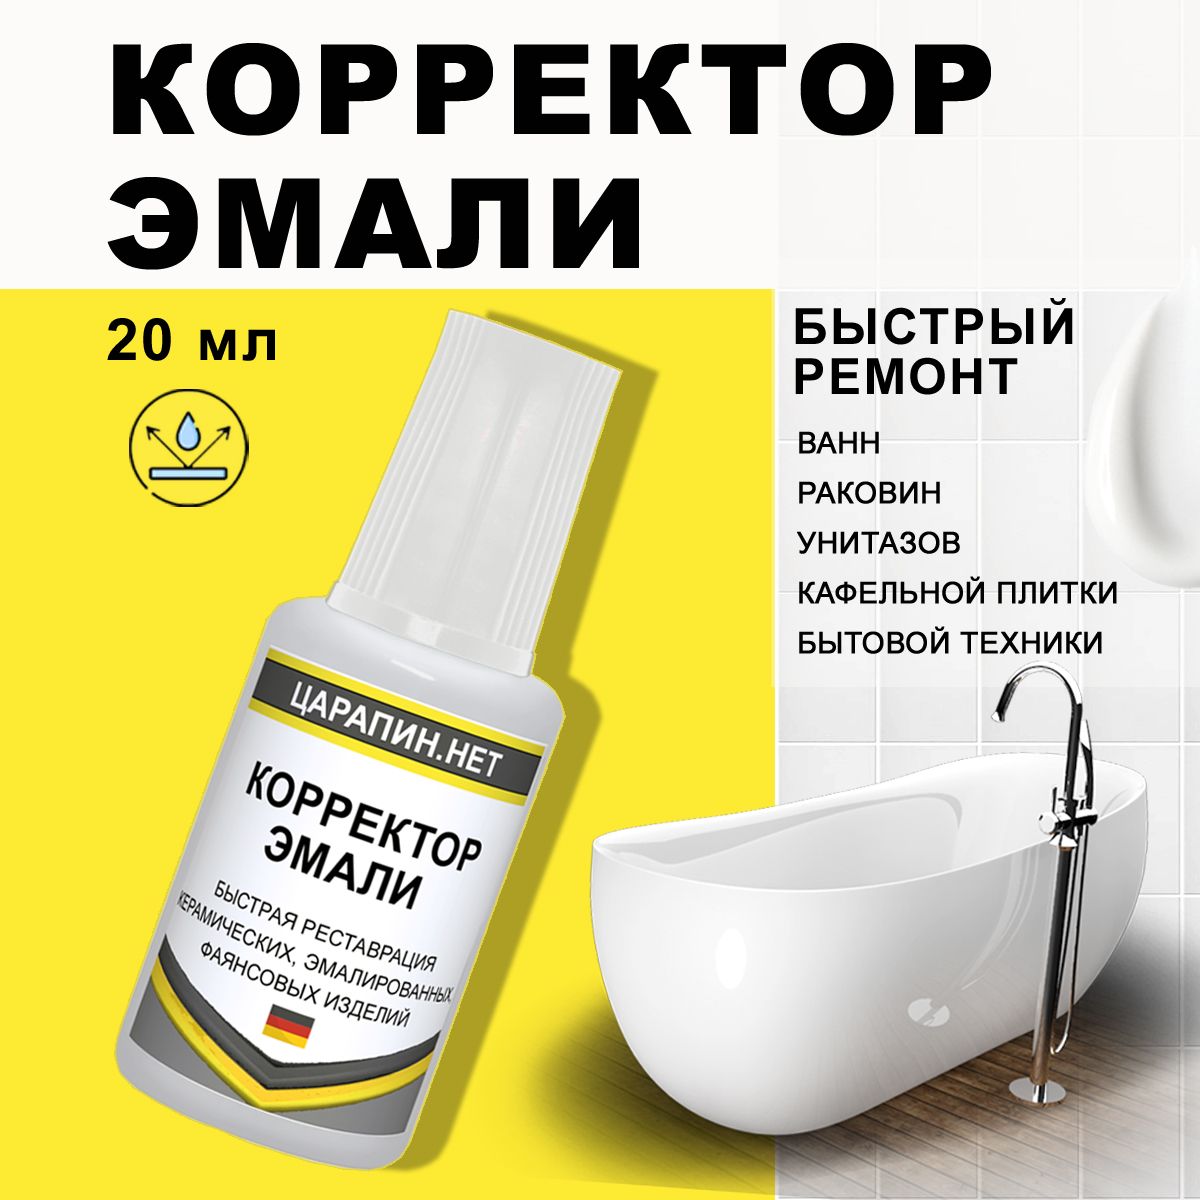 Отремонтировать скол на эмали ванны в Москве